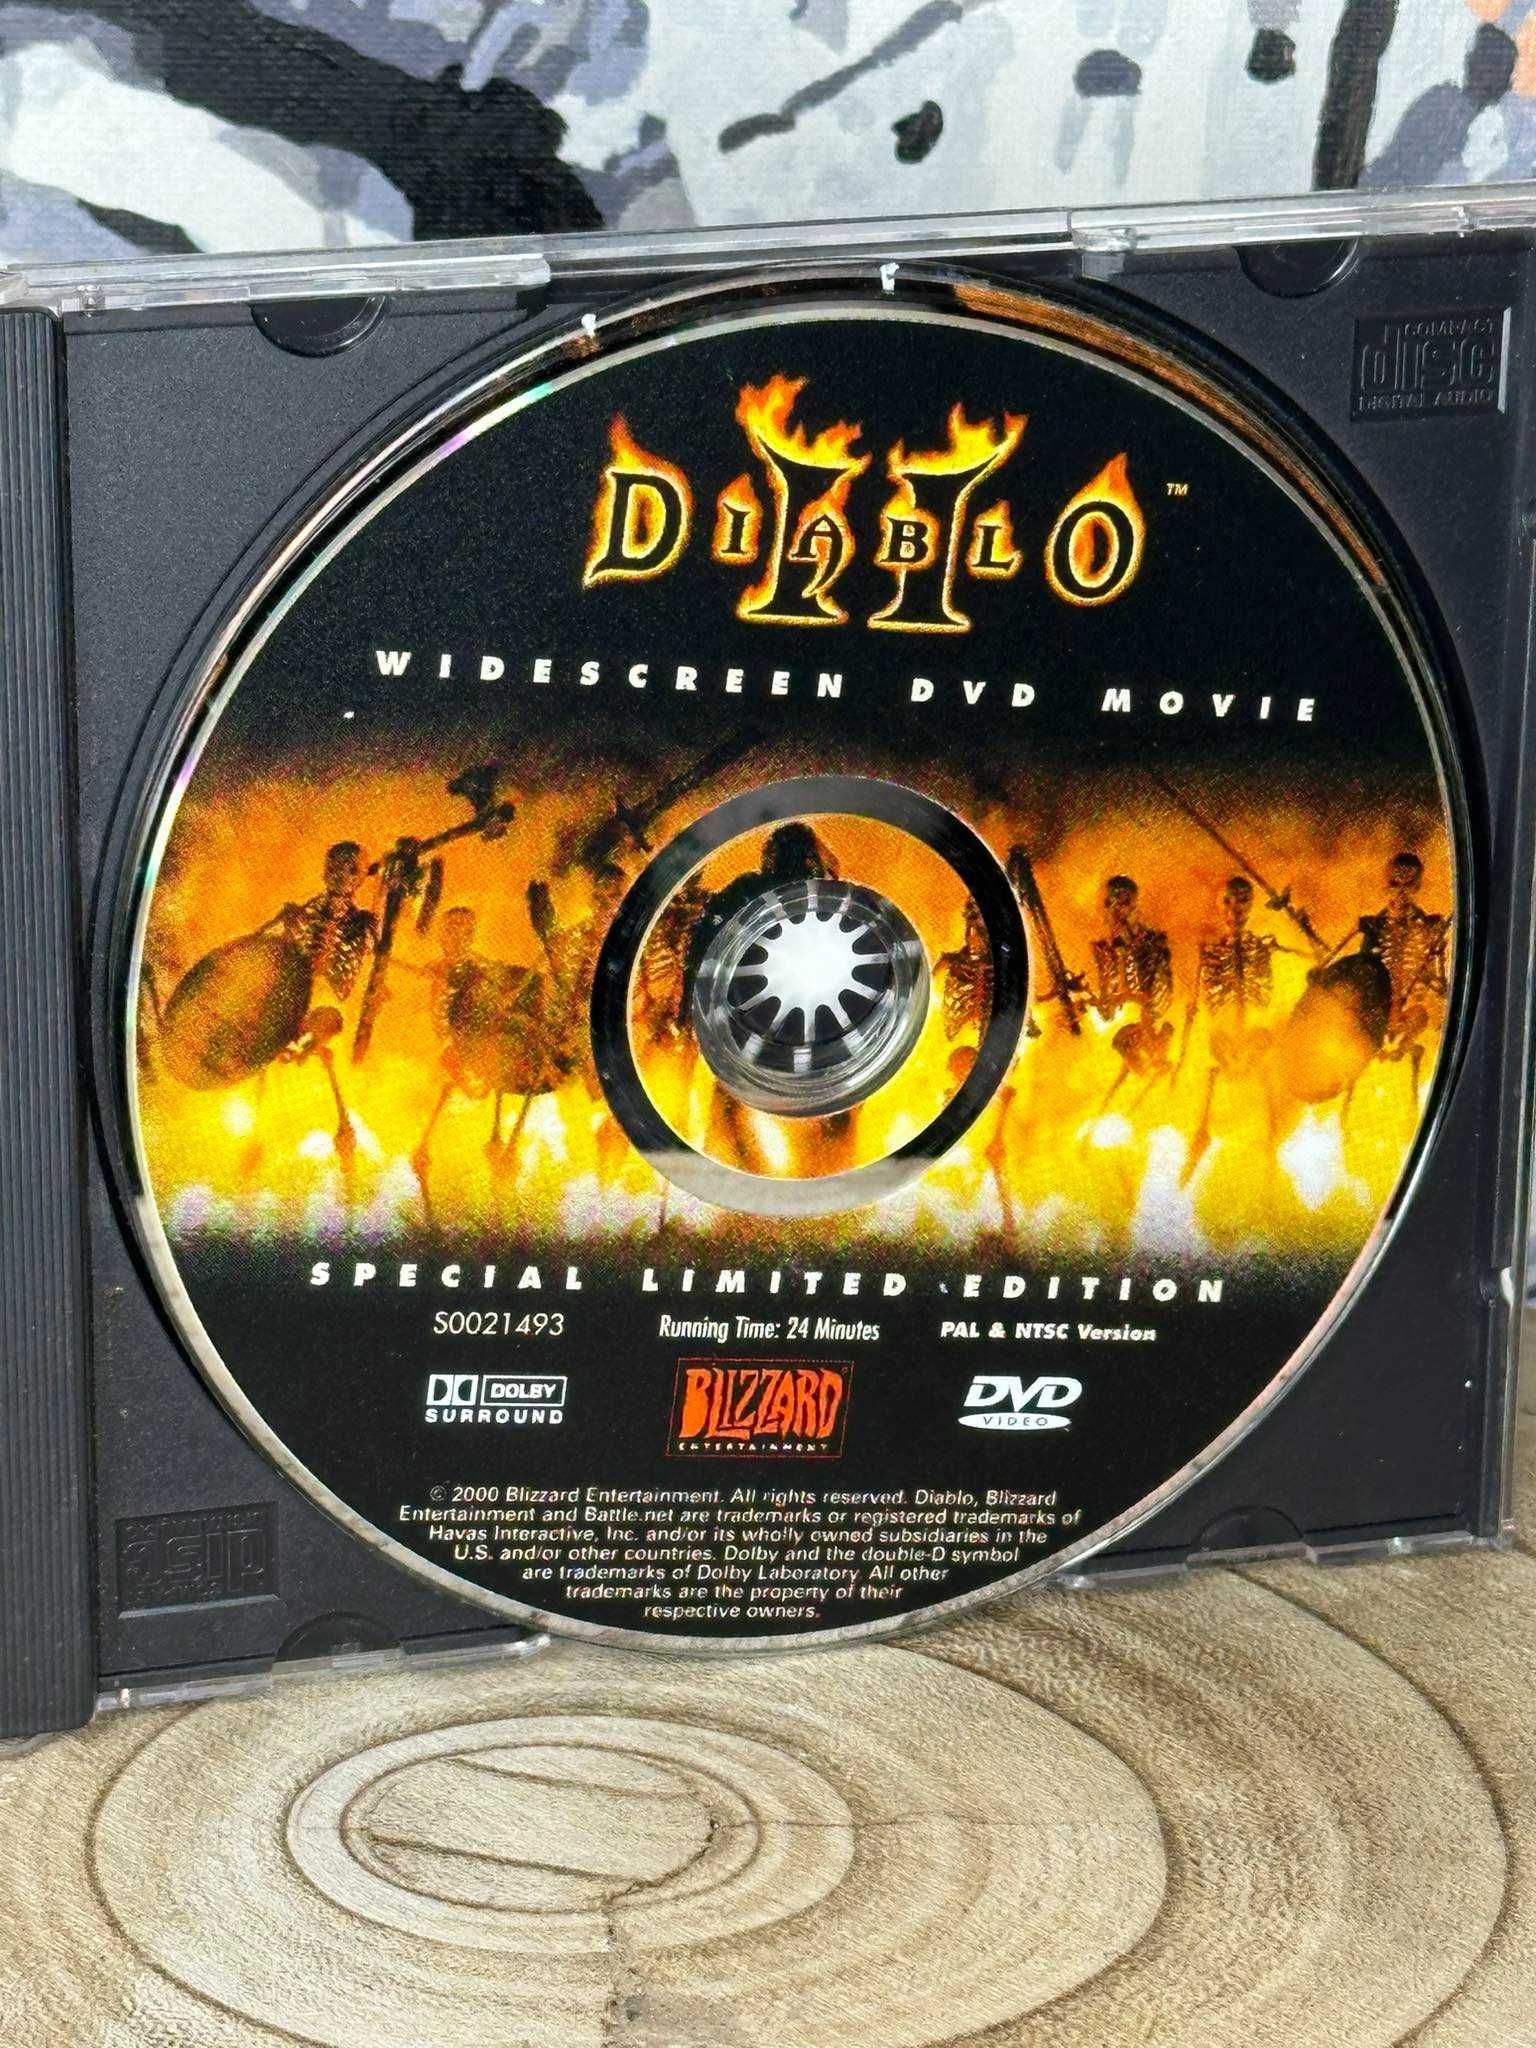 Diablo II 2 - Widescreen DVD movie - specjalna limitowana edycja